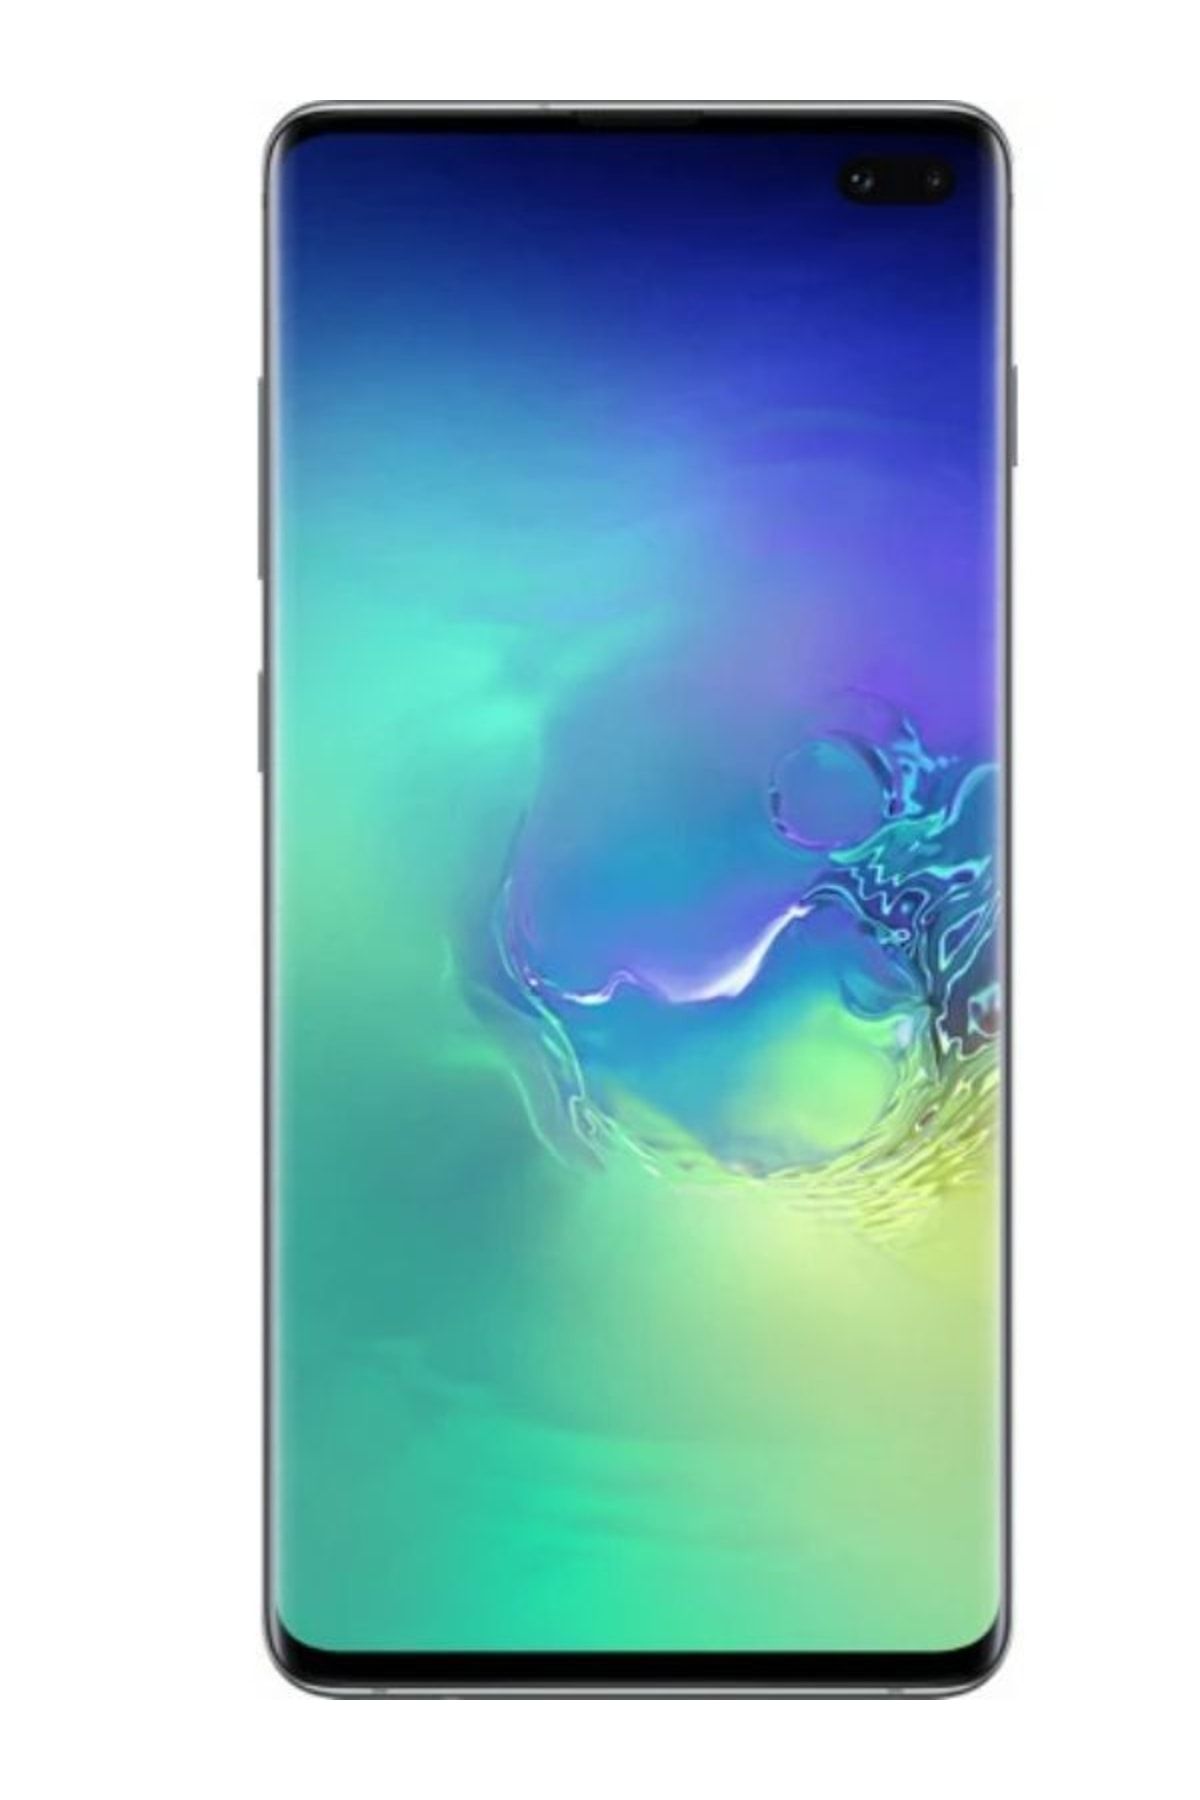 Samsung Yenilenmiş Galaxy S10 Plus 128 GB (12 Ay Garantili)